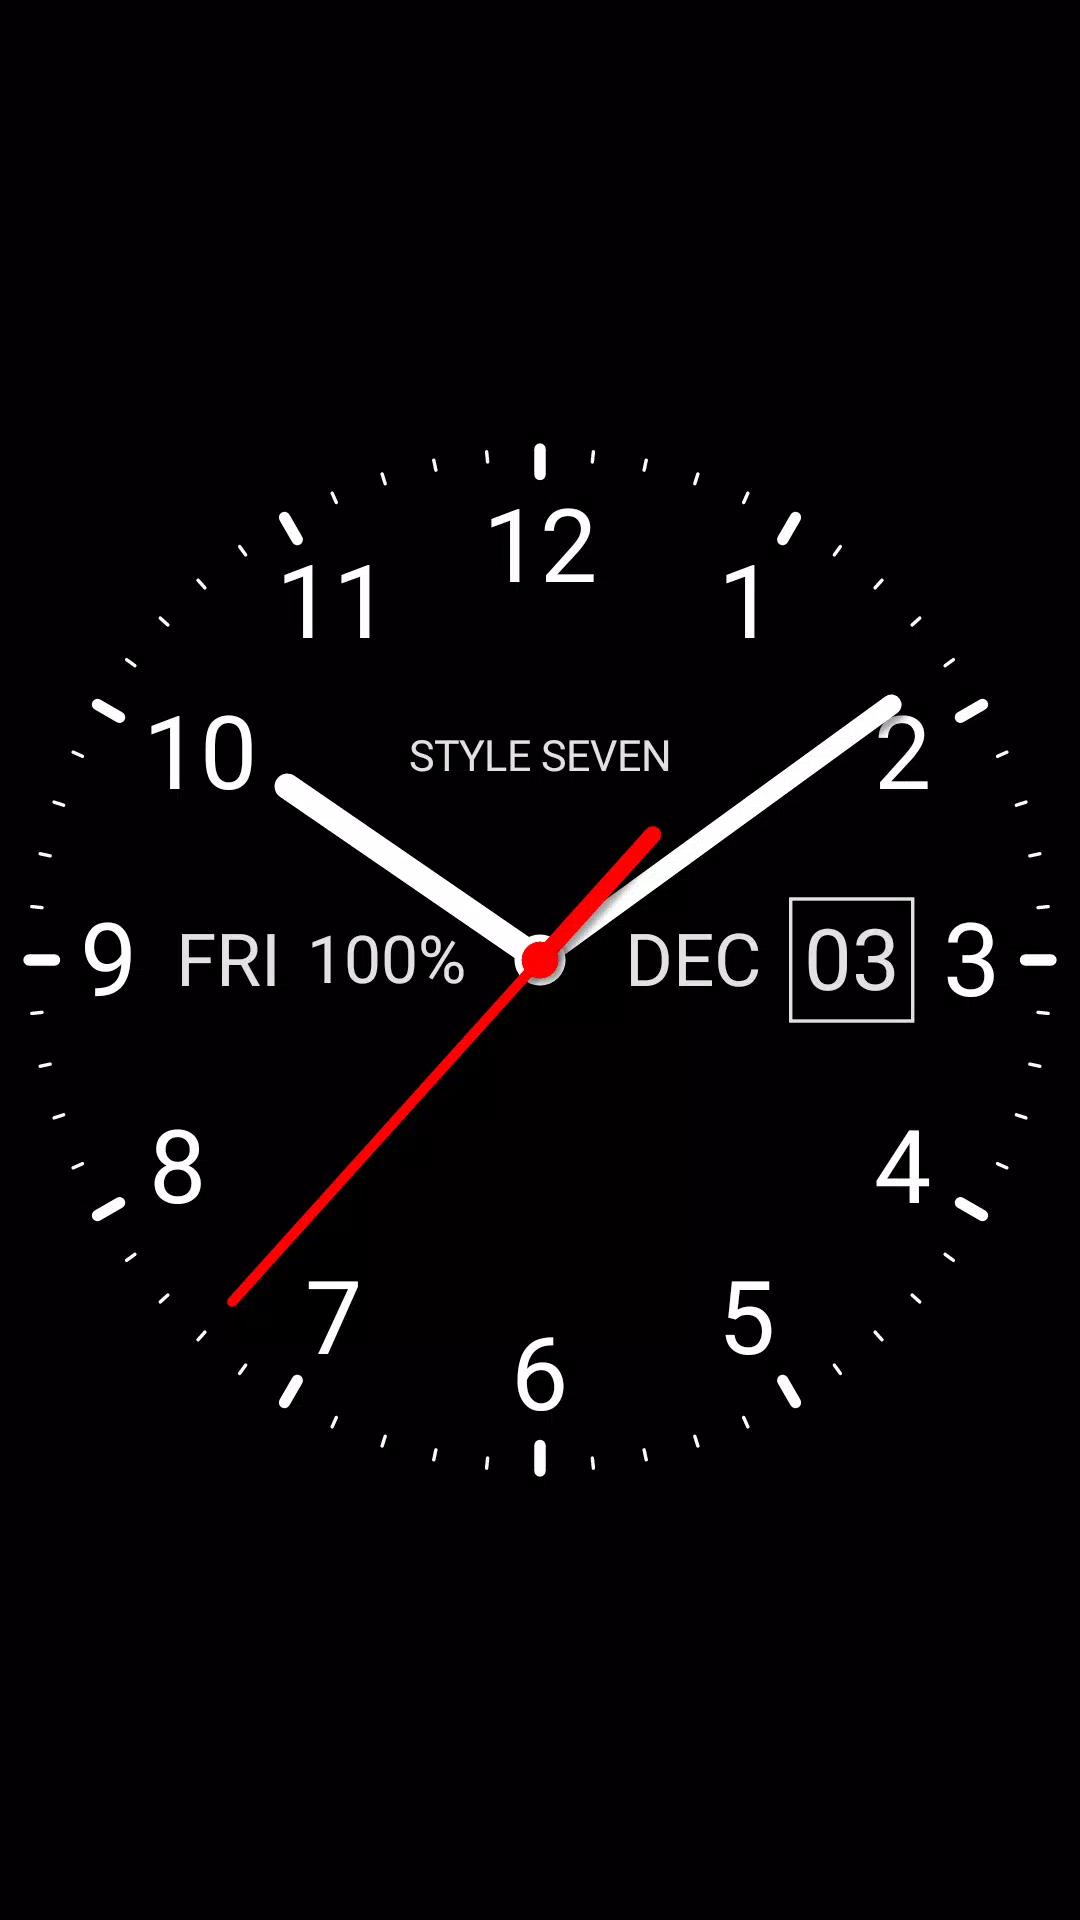 Ứng dụng hình nền Live Analog Clock-7 cho Android sẽ mang lại cho bạn một phiên bản độc đáo với màn hình đồng hồ sống động. Bộ hình nền này được thiết kế sáng tạo với những chủ đề khác nhau, từ cổ điển đến hiện đại. Analog Clock Live Wallpaper-7 APK for Android sẽ khiến bạn như đang sở hữu một chiếc đồng hồ đặc biệt trên màn hình điện thoại của mình.